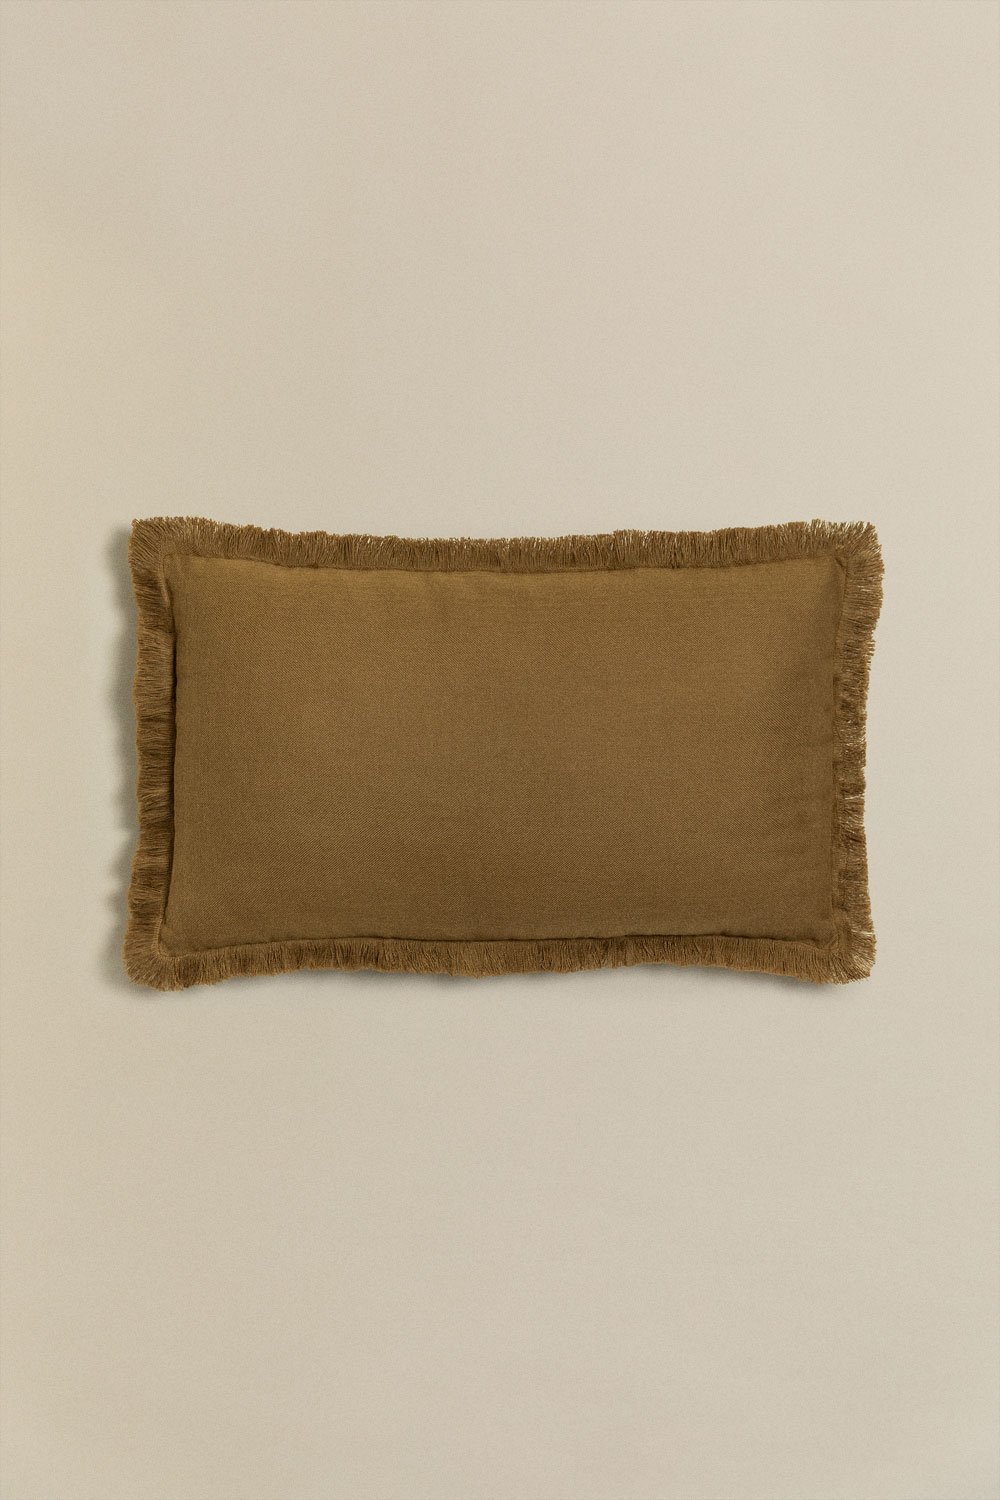 Cuscino rettangolare in cotone (30x50 cm) Soncey, immagine della galleria 1